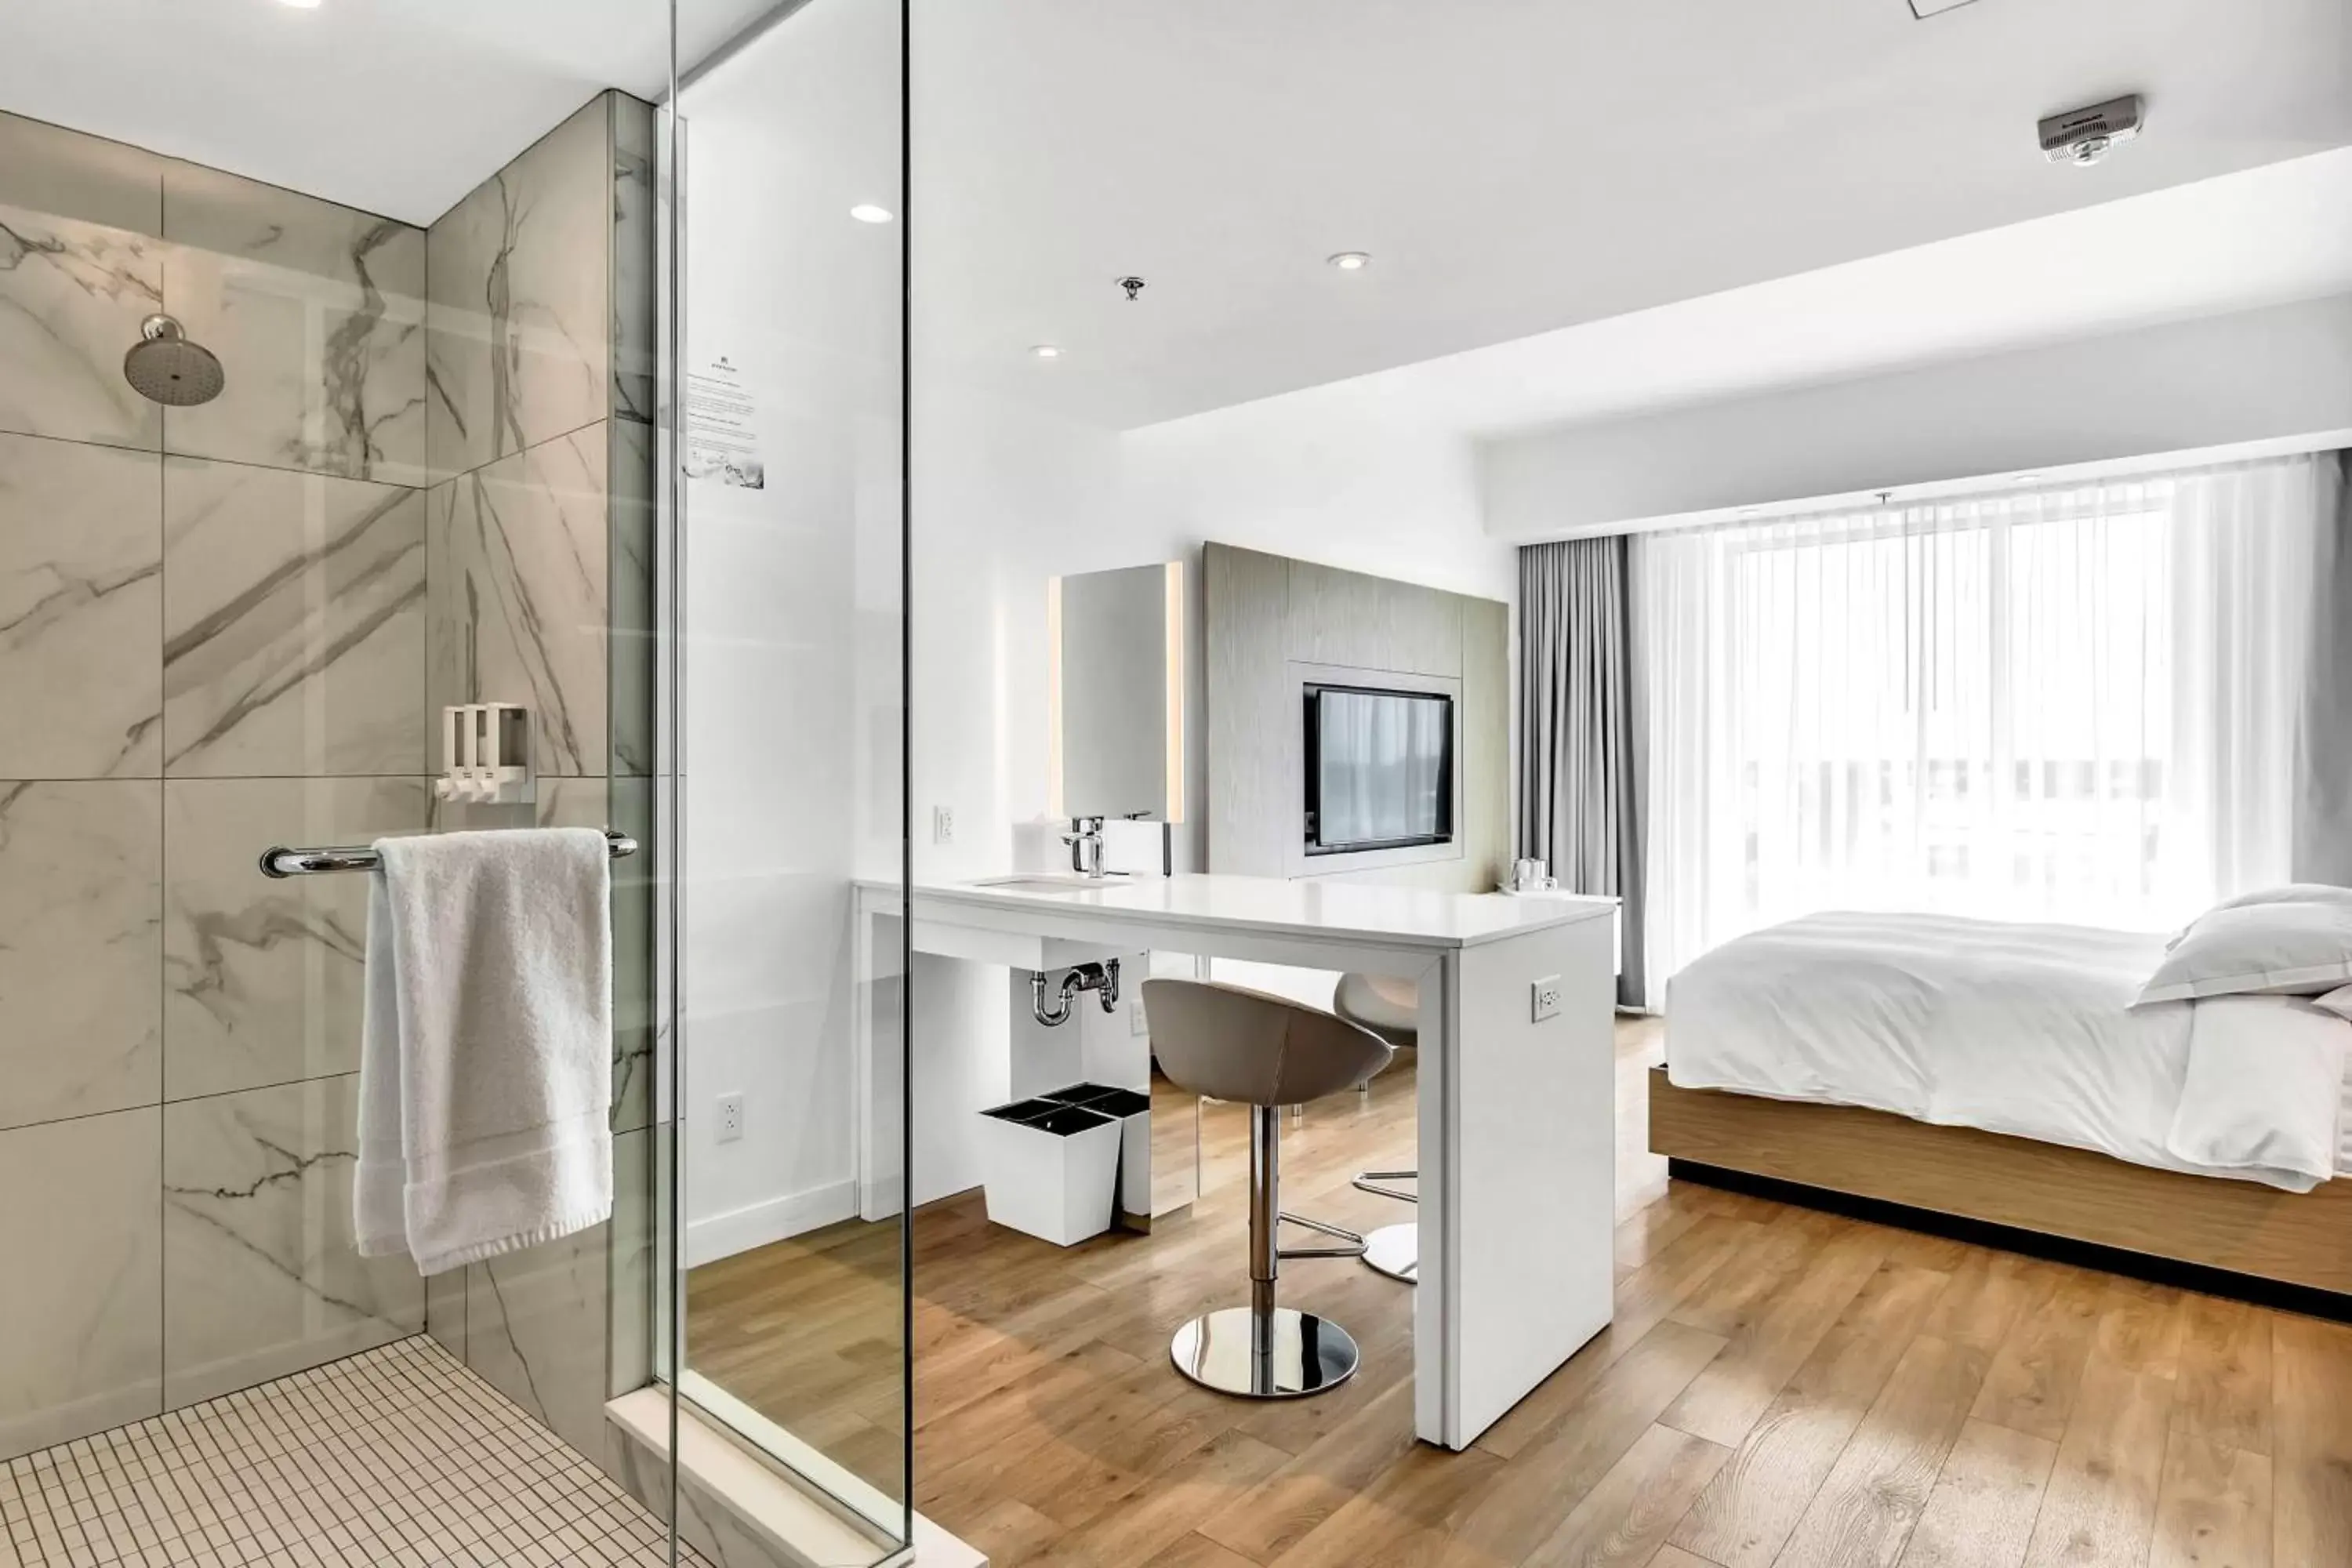 Bedroom, Bathroom in Hotel Mortagne